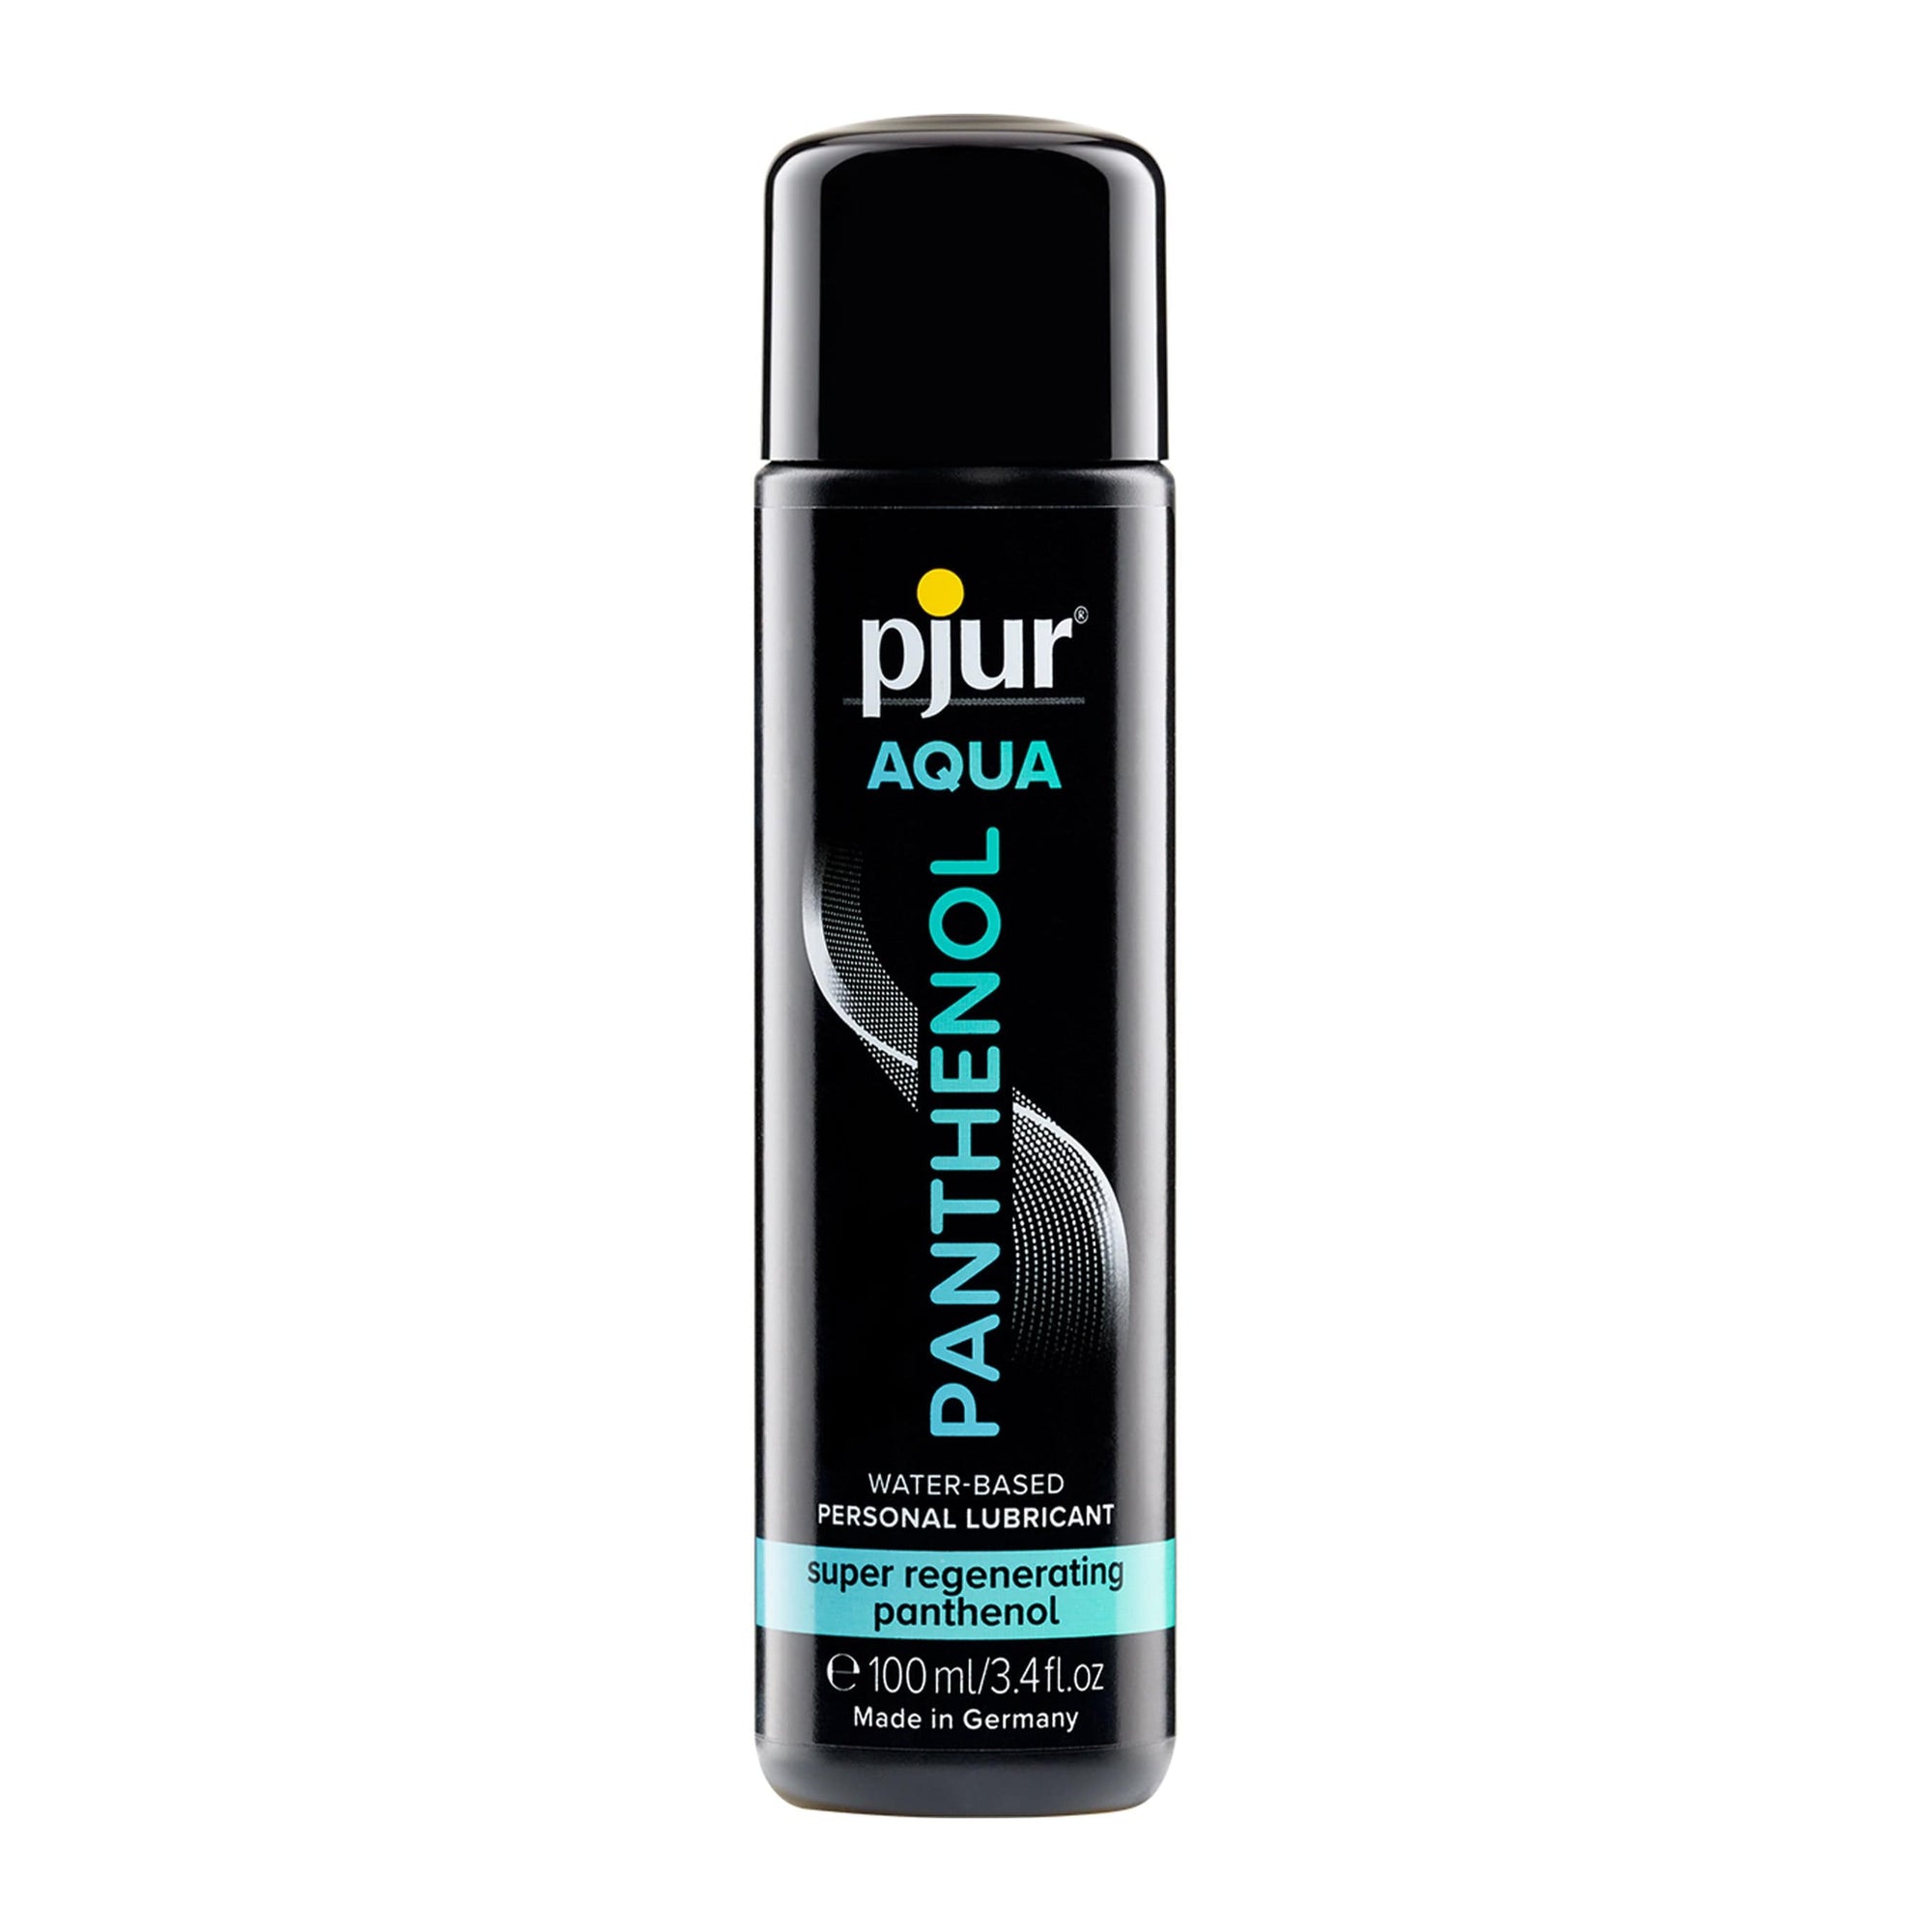 Pjur - Aqua Panthenol Water Based Personal Lubricant 100ml Lube (Water Based) 827160113834 CherryAffairs